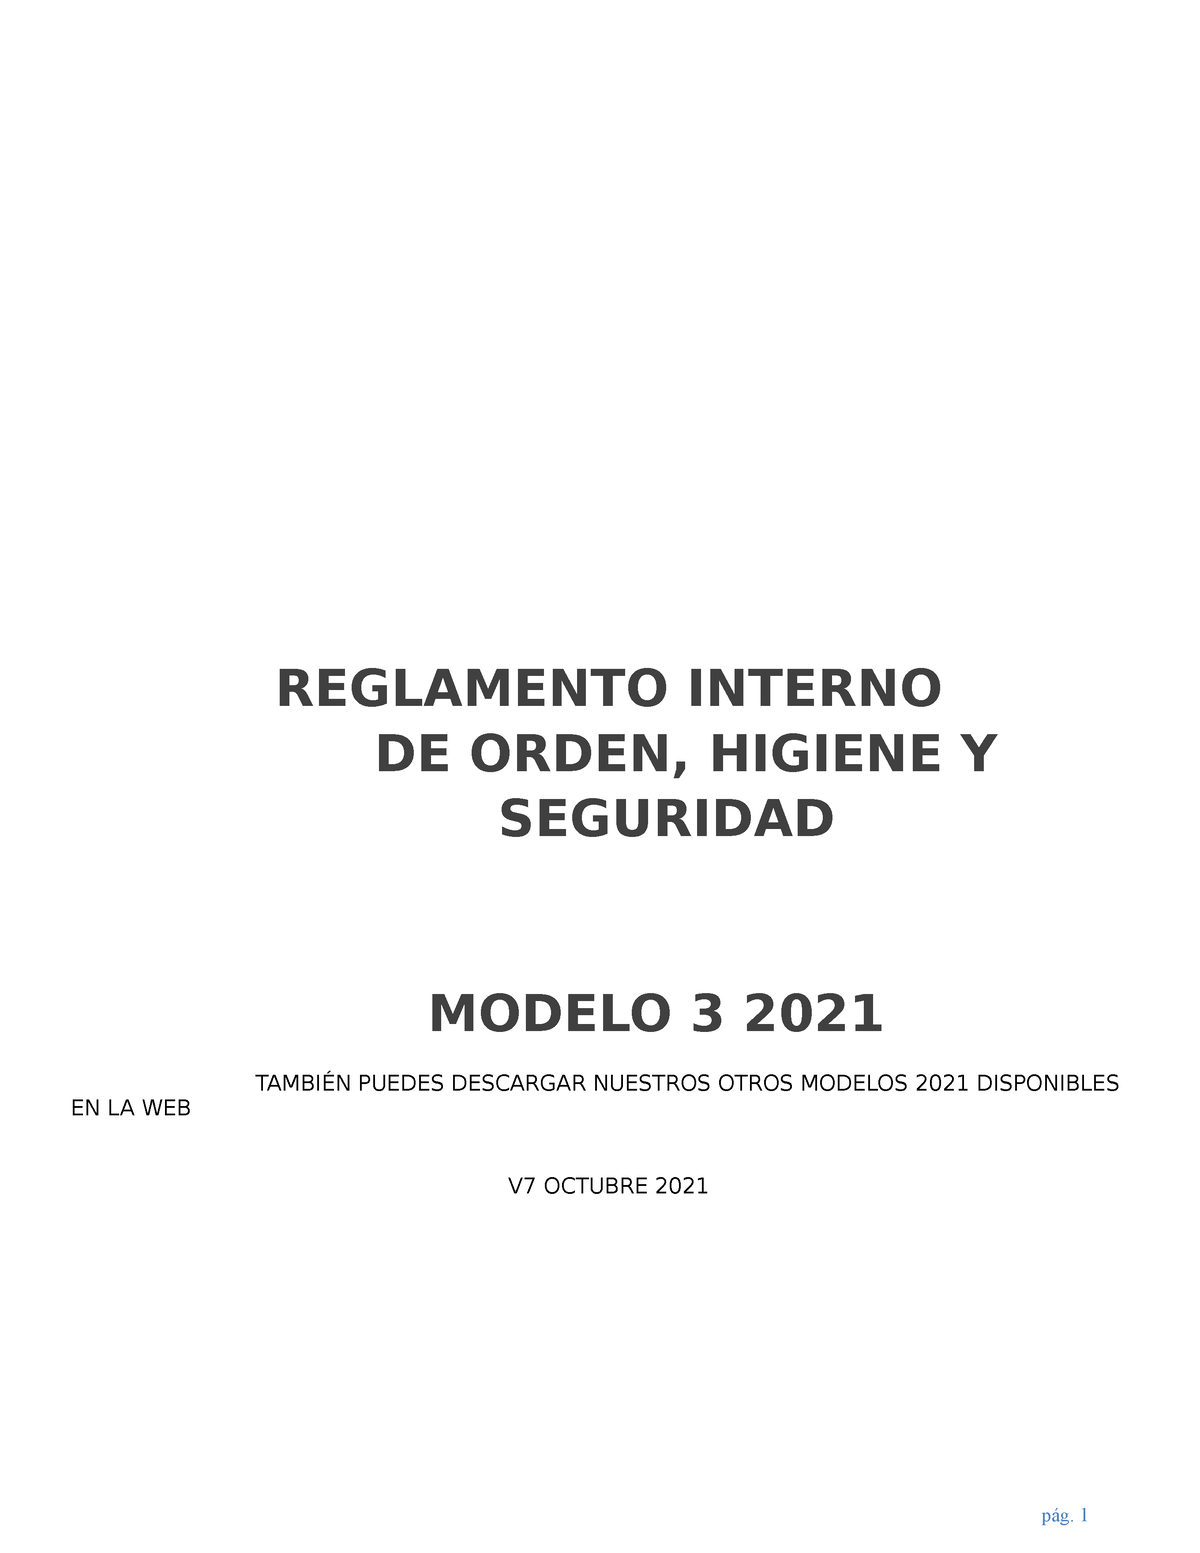 Reglamento Interno Riohs 2021 V7 Oct Mod3 Ok Reglamento Interno De Orden Higiene Y Seguridad 7645